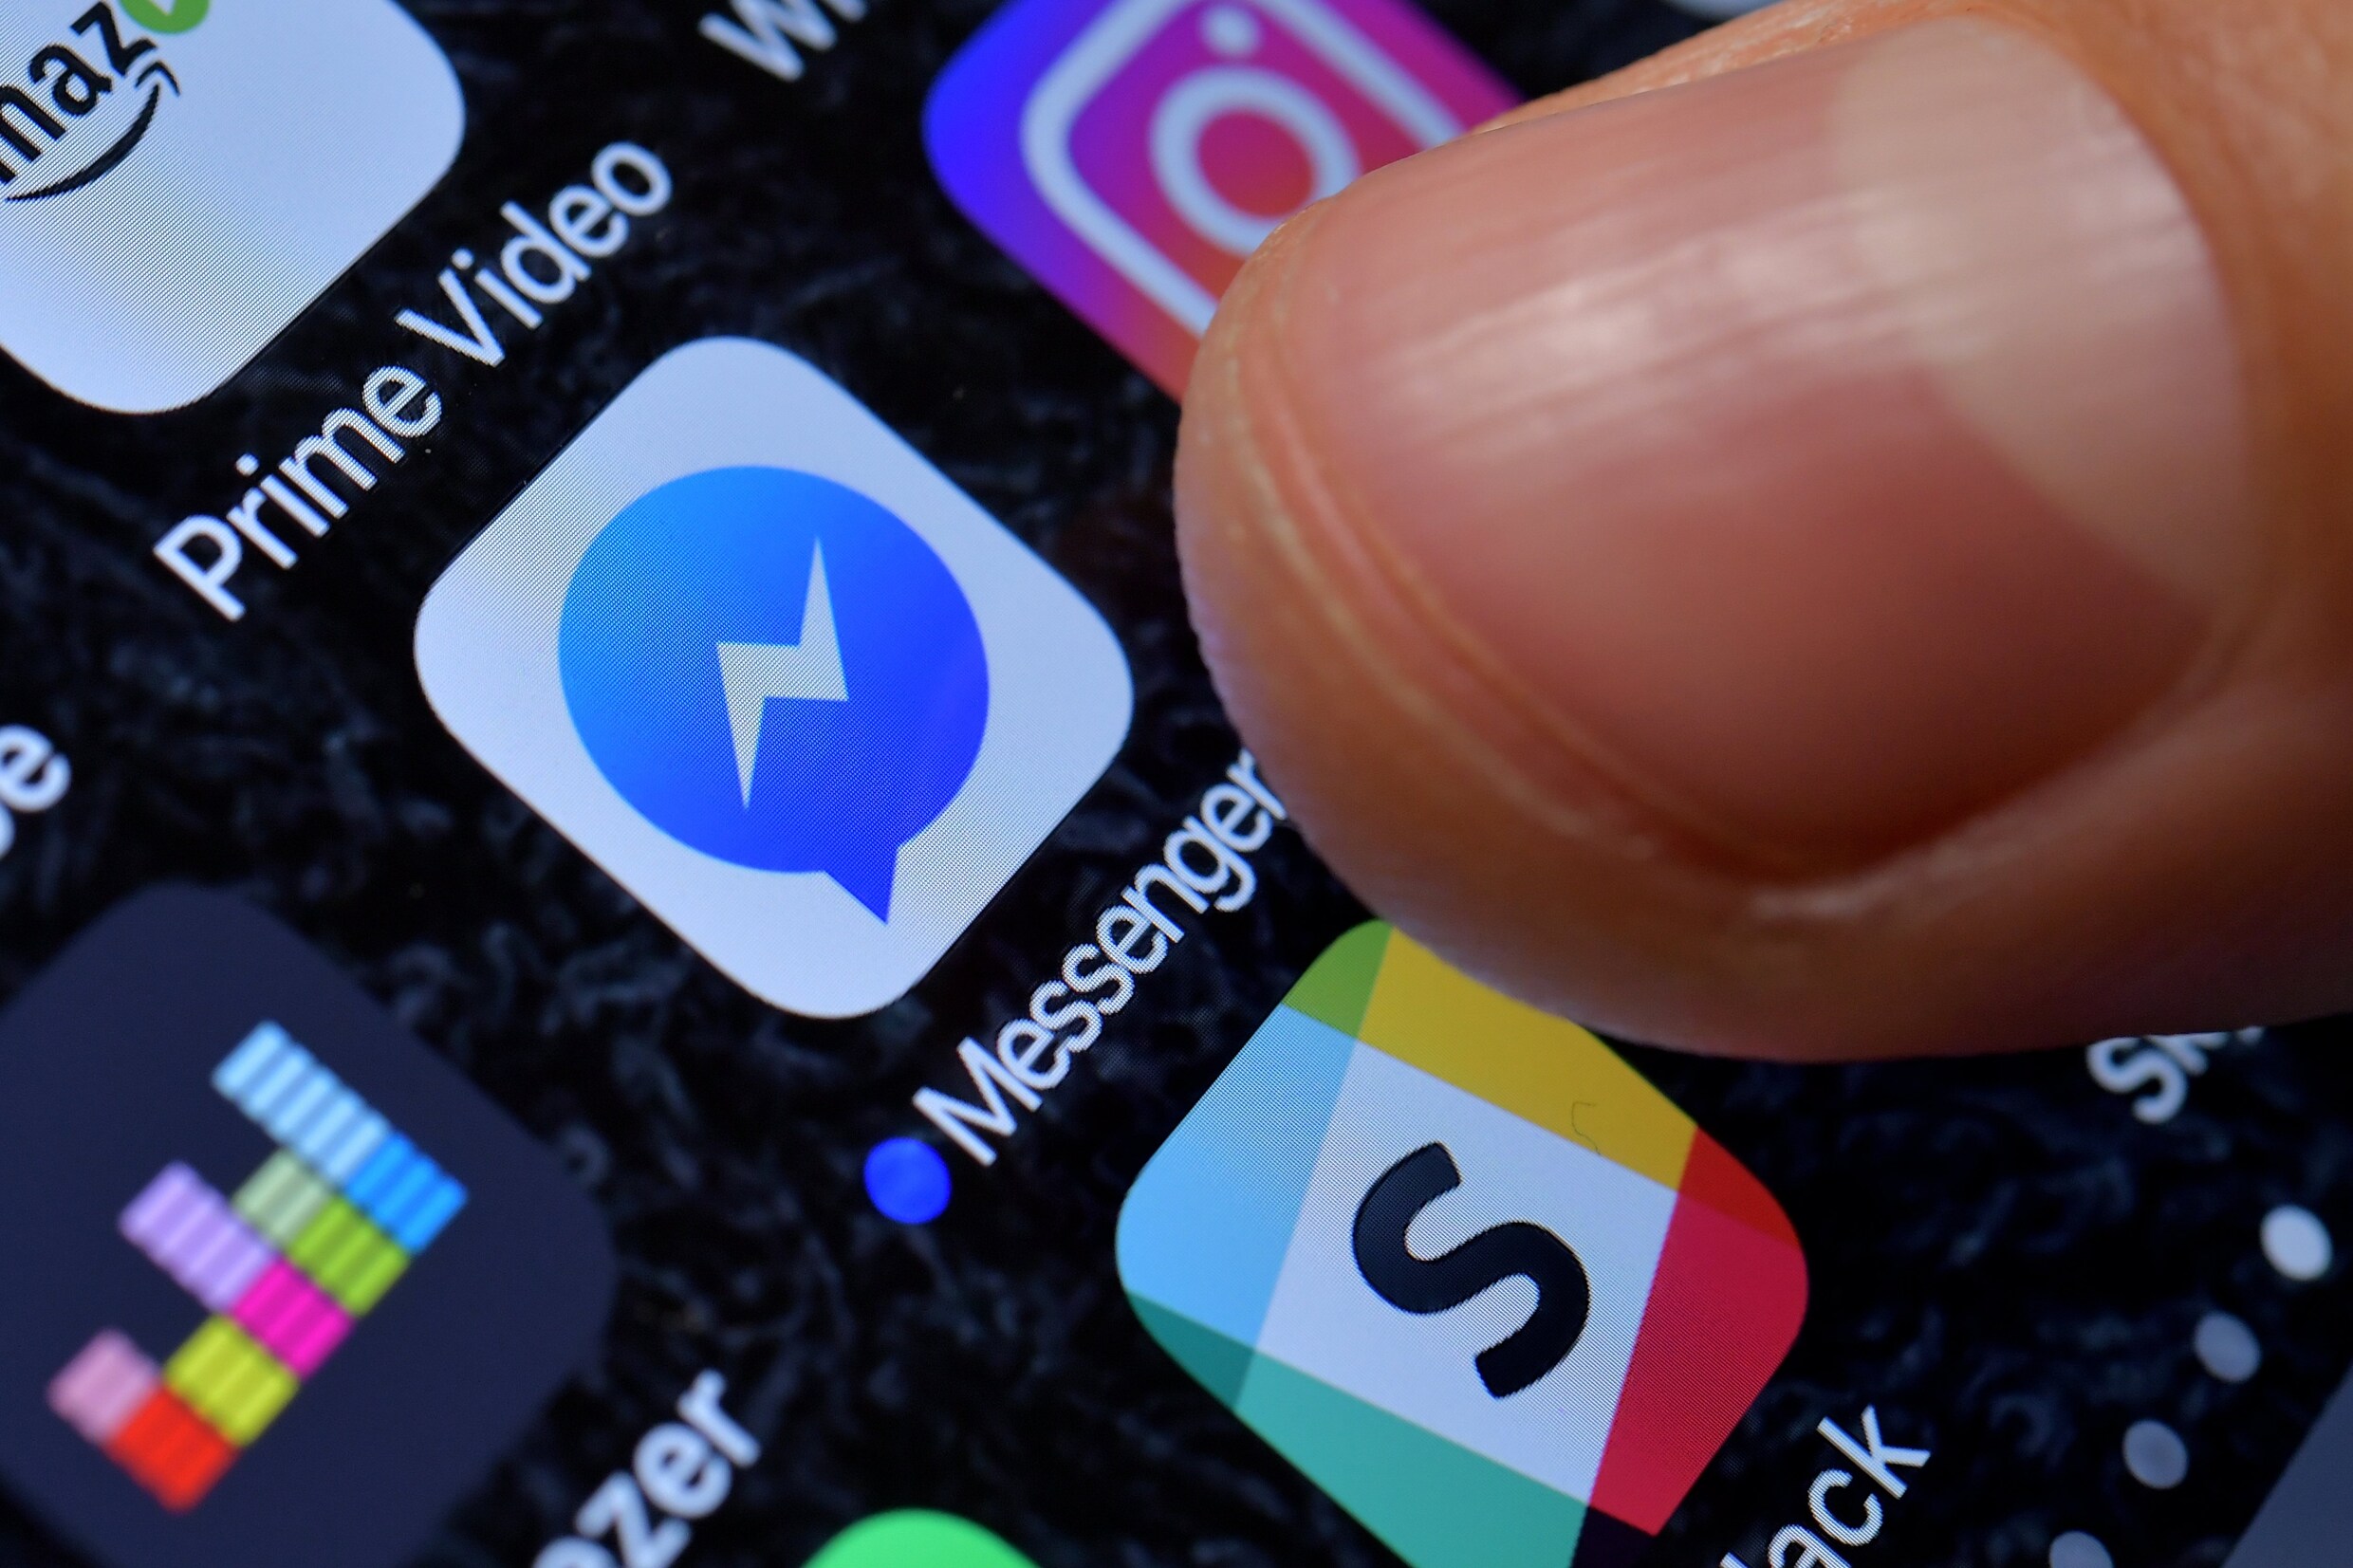 Berichten op Facebook Messenger verwijderen nadat u ze verstuurde? Straks kan het wellicht